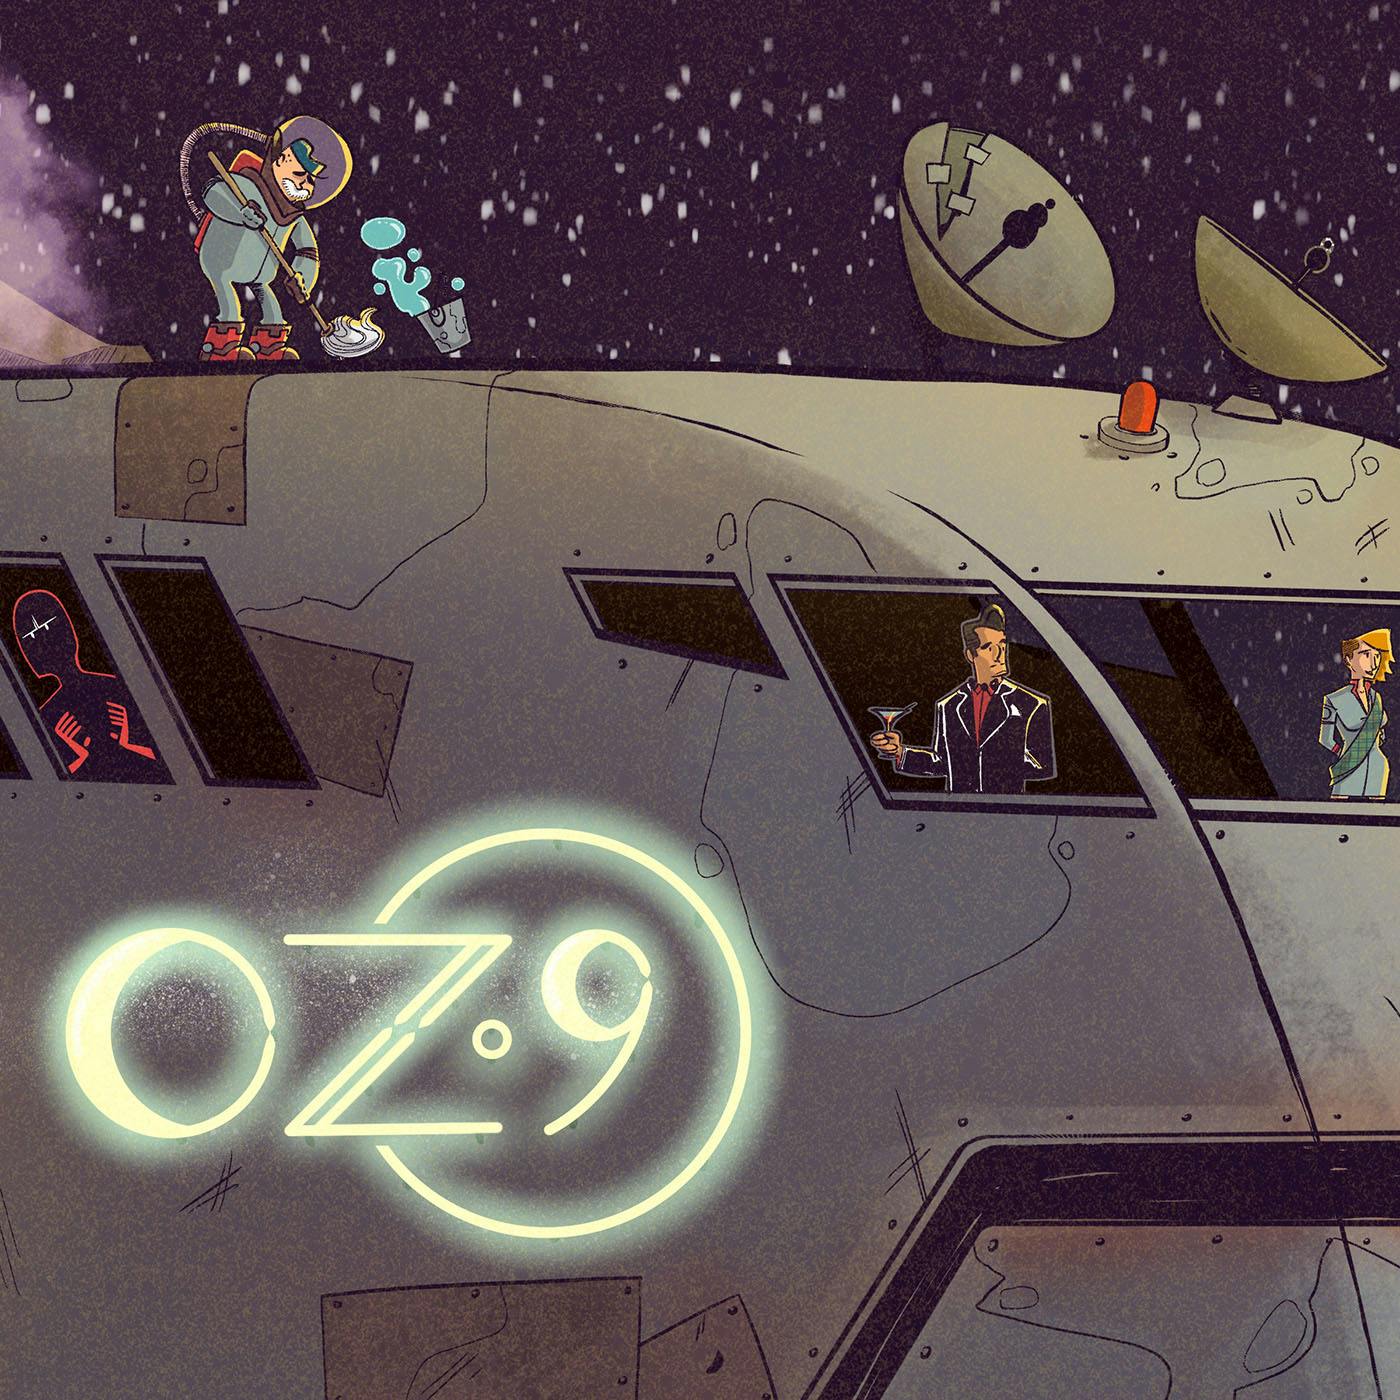 Bonus: Oz 9 episode X-1